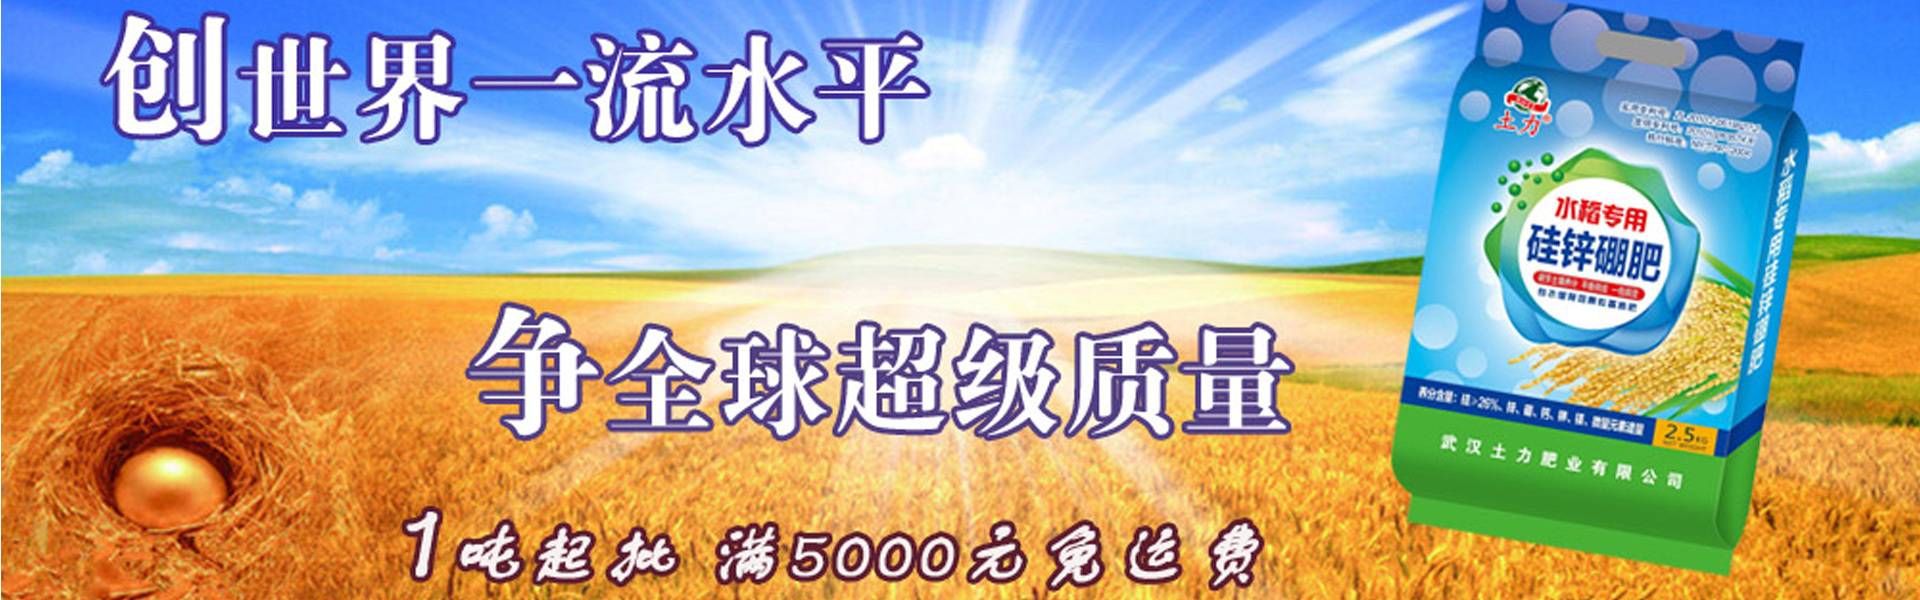 武汉土力肥业有限公司网站首页形象大图-蔬菜专用硅锌硼肥1吨起批，满5000元免运费